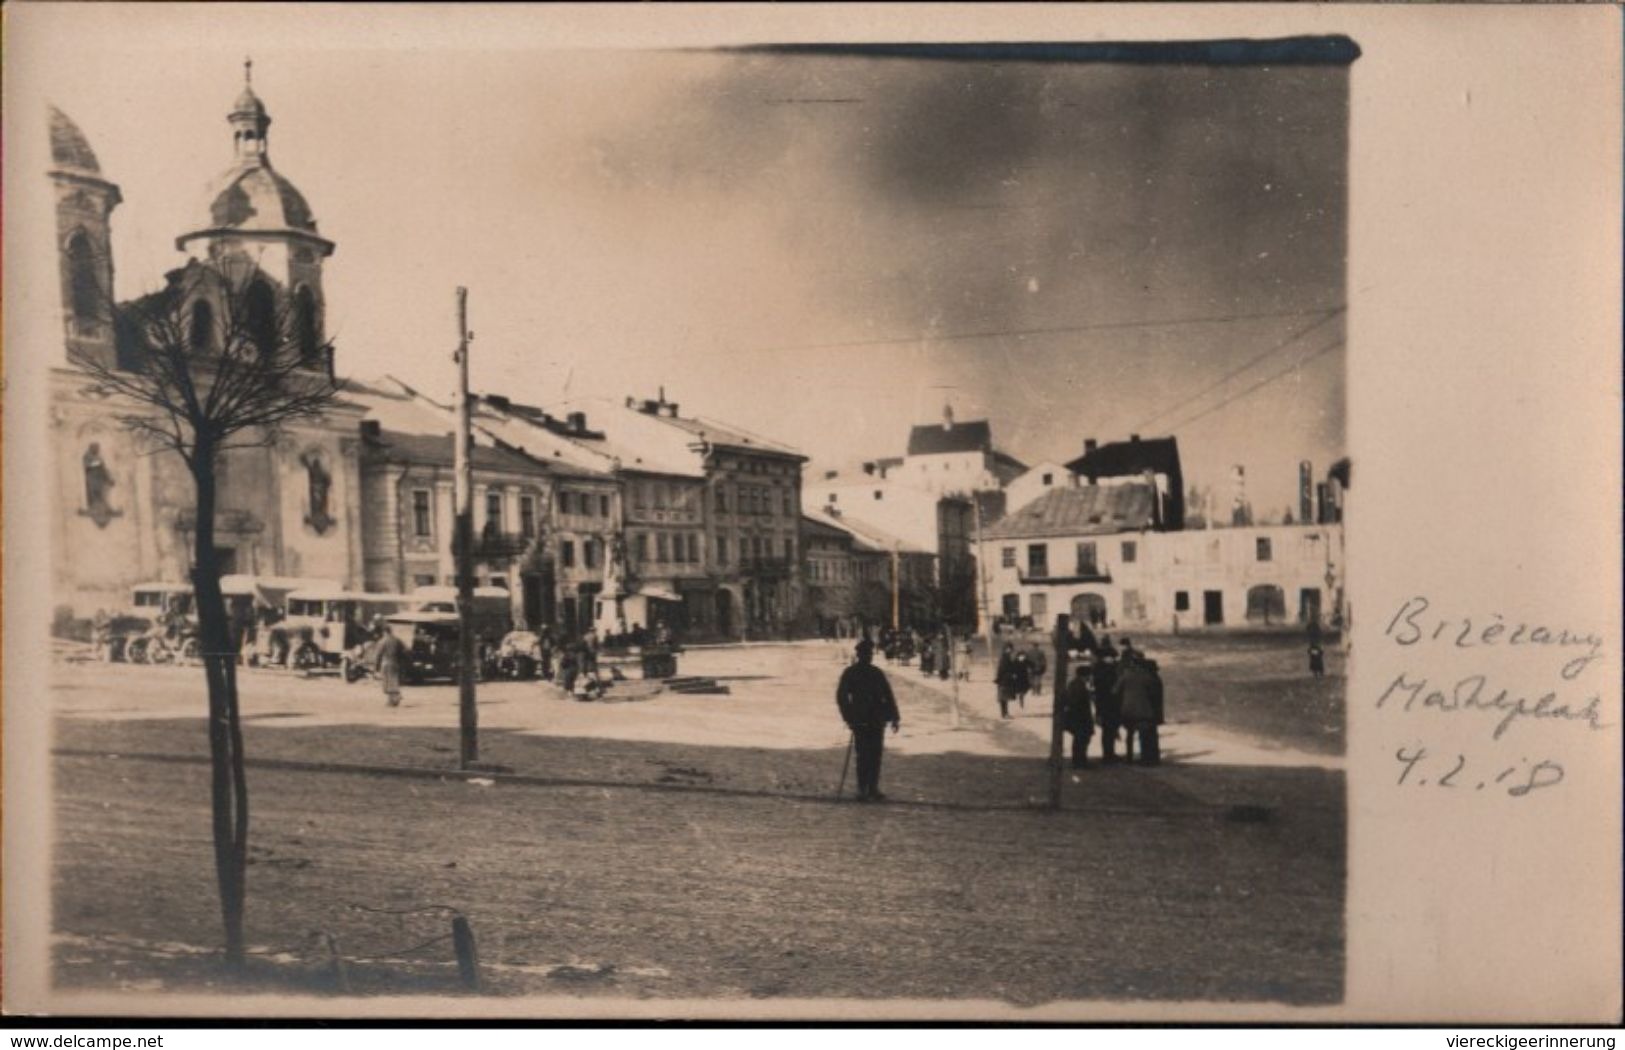 ! 3 Alte Fotokarten 1917, Photos, Bereschany, Brzezany, Schloß, Markt, 1. Weltkrieg, Ukraine, Obl. Ternopil - Ukraine